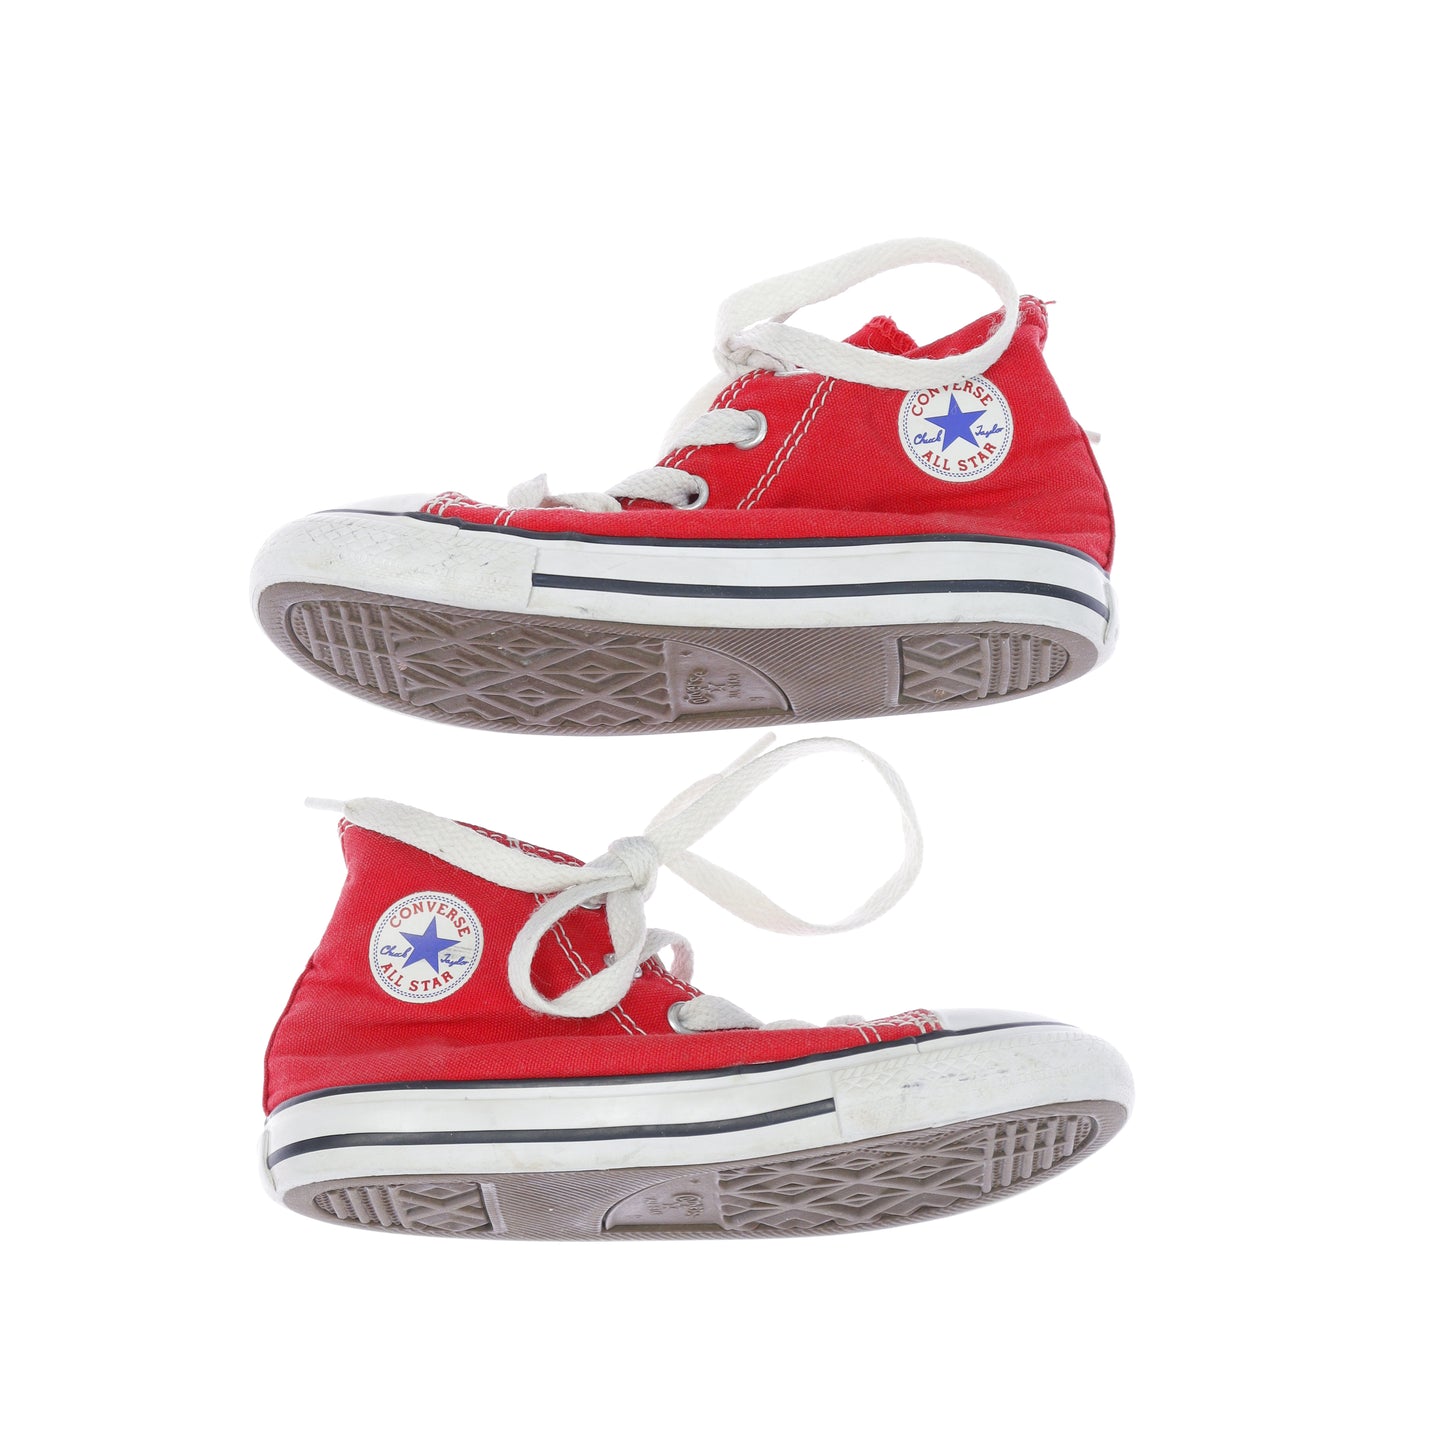 Παπούτσια Converse (3 ετών - 4 ετών)